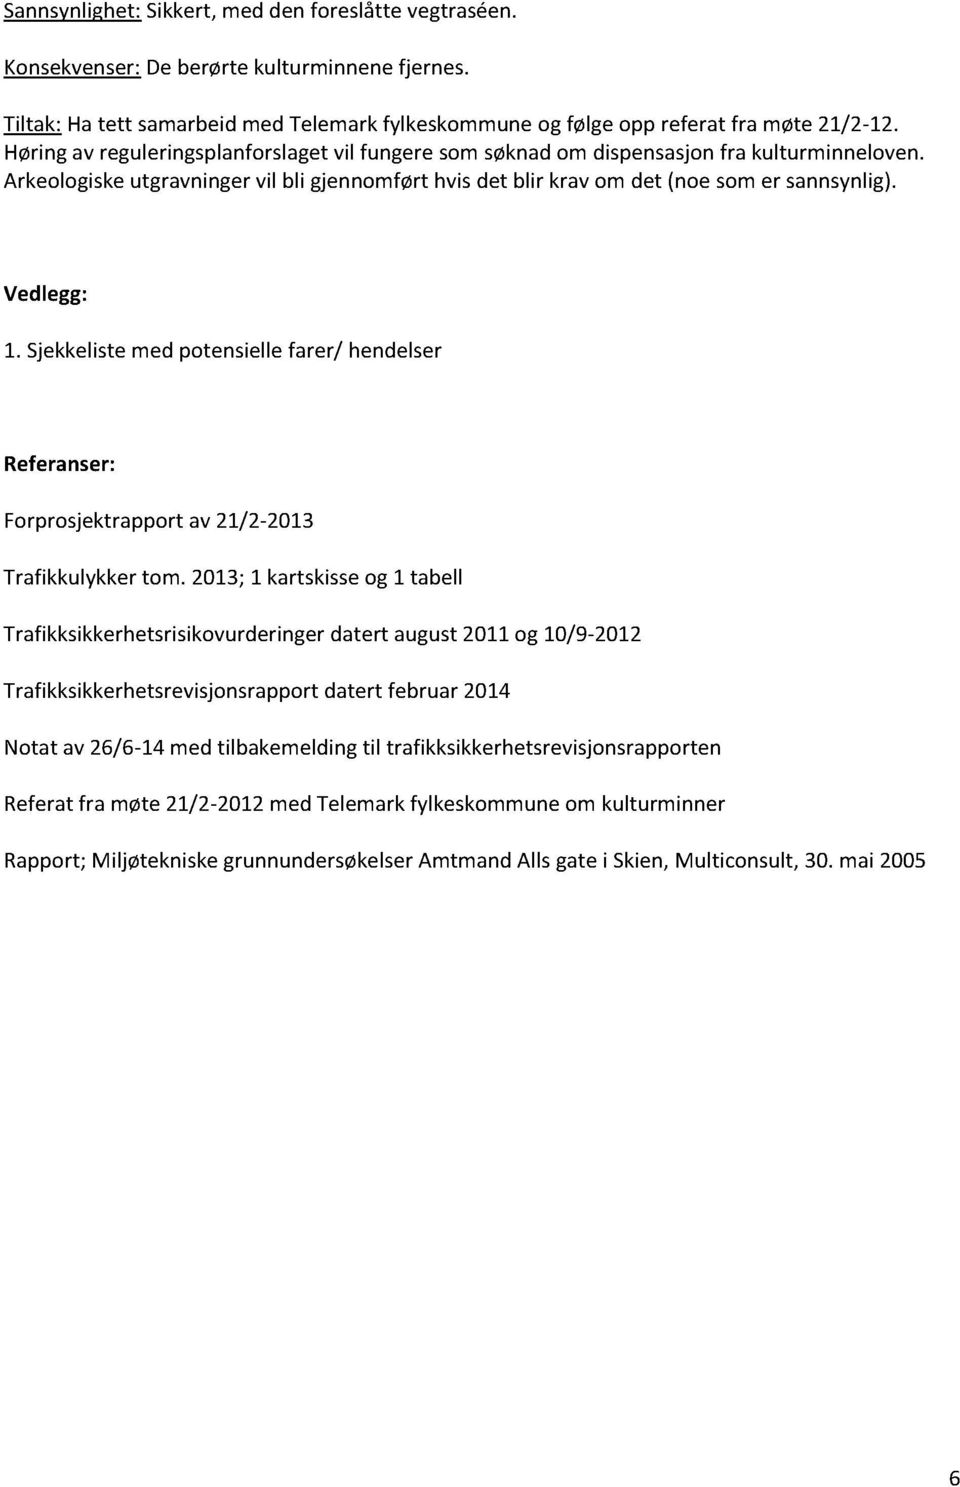 Sjekkelistemed potensiellefarer/ hendelser Referanser: Forprosjektrapportav 21/2-2013 Trafikkulykker tom.